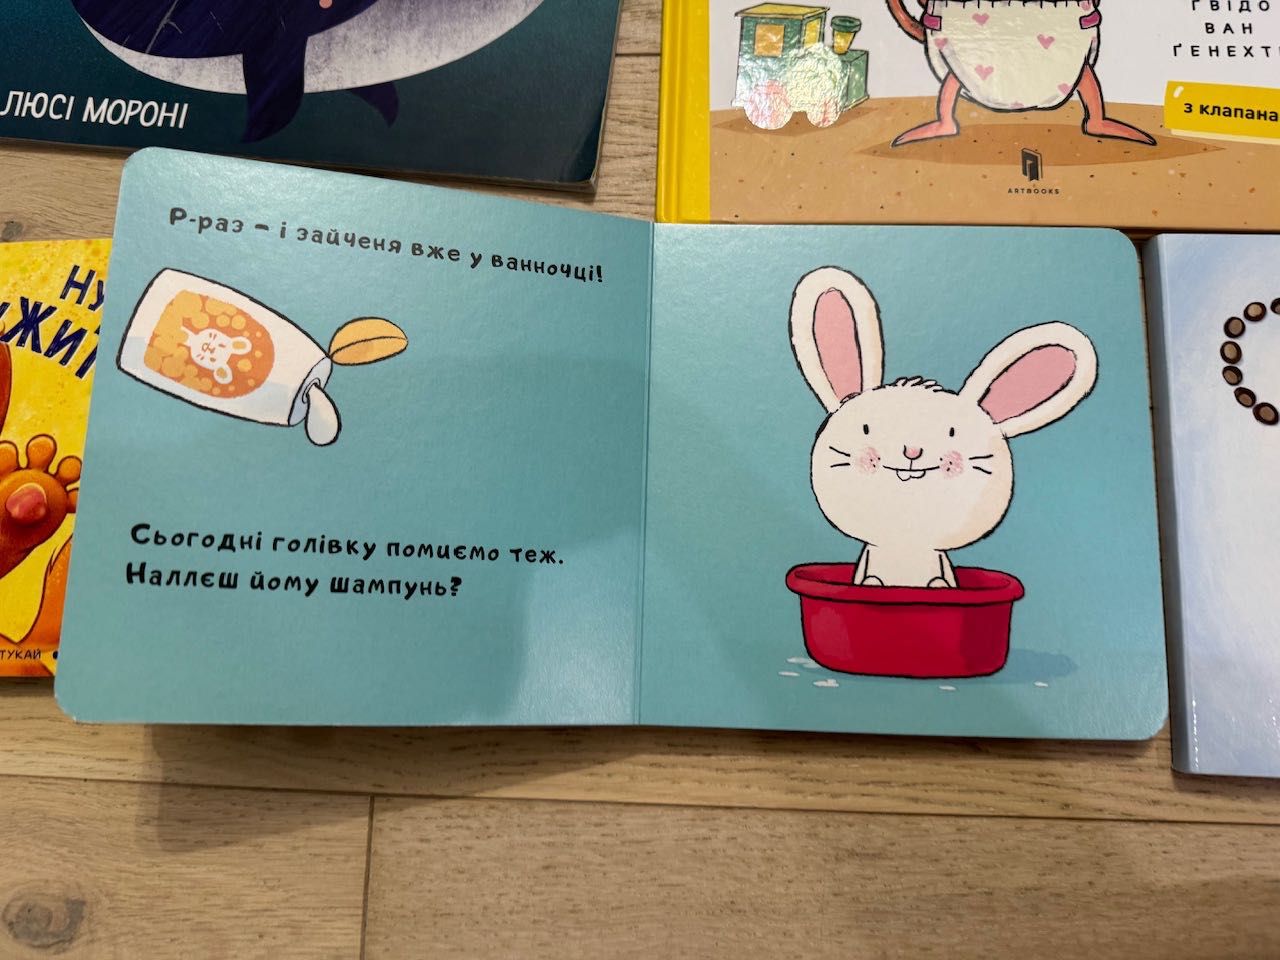 Książki dla dzieci w języku ukraińskim, книги для дітей українською